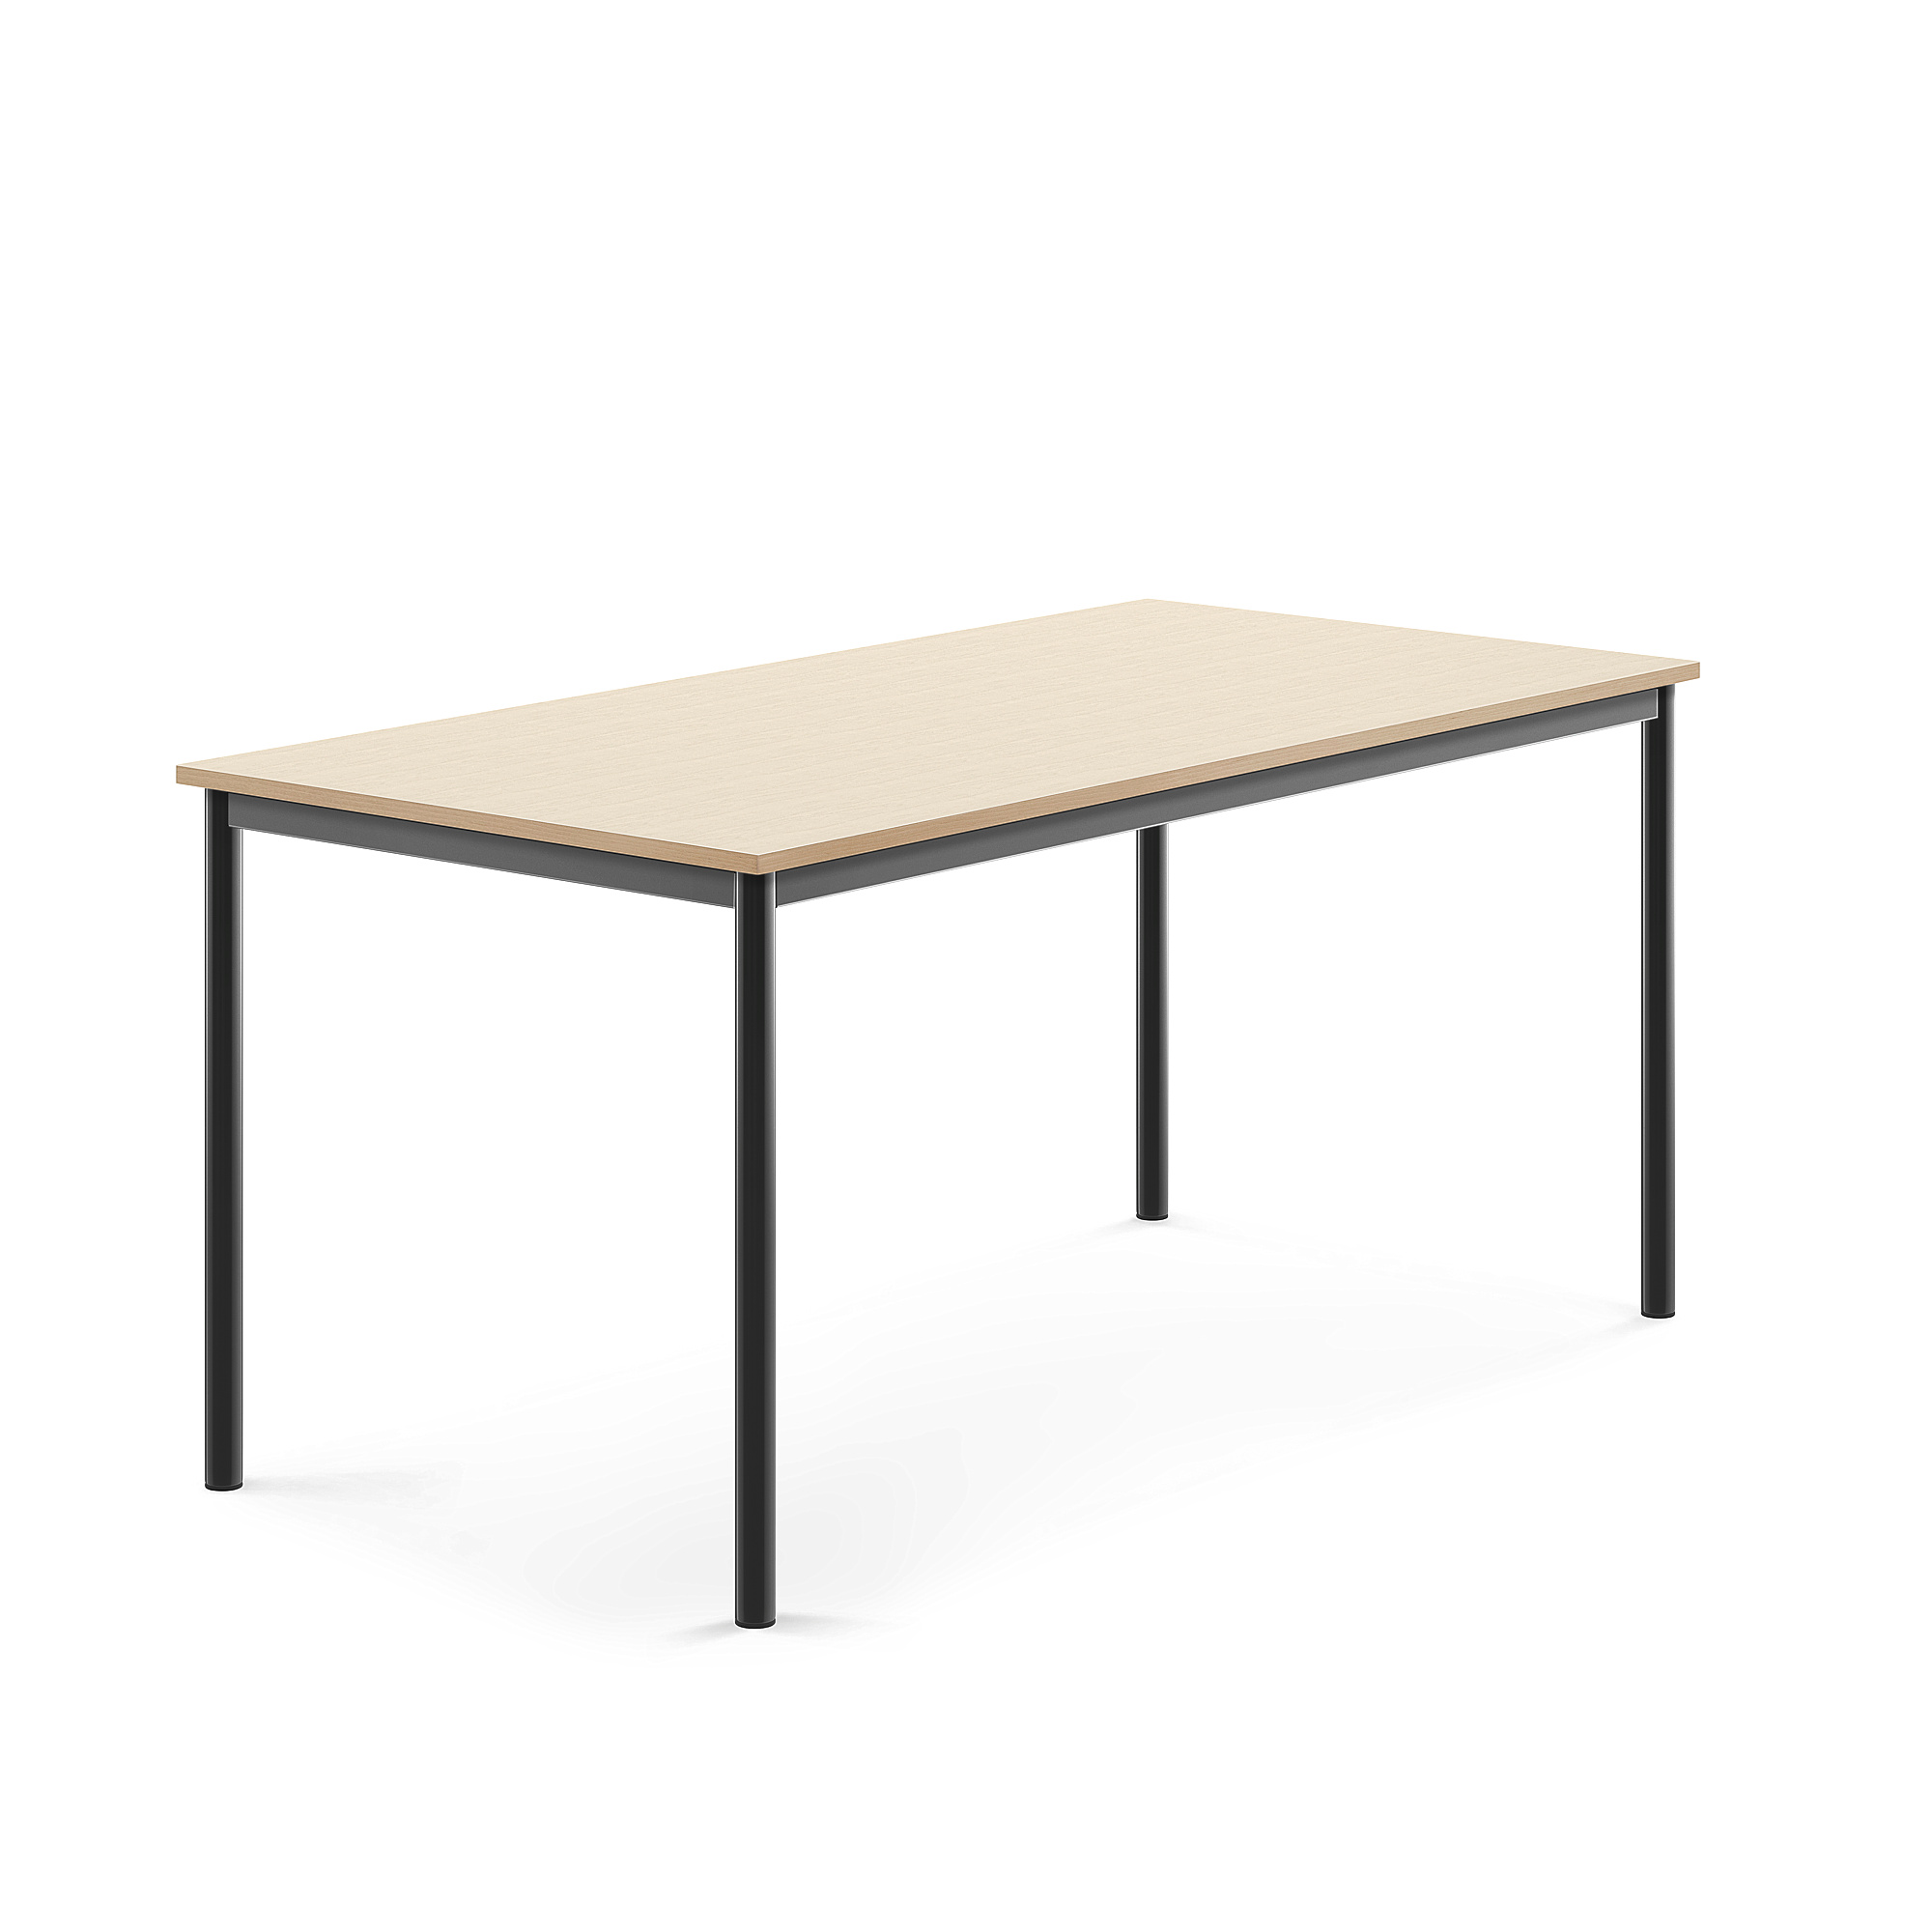 Stůl SONITUS, 1600x800x720 mm, antracitově šedé nohy, HPL deska tlumící hluk, bříza